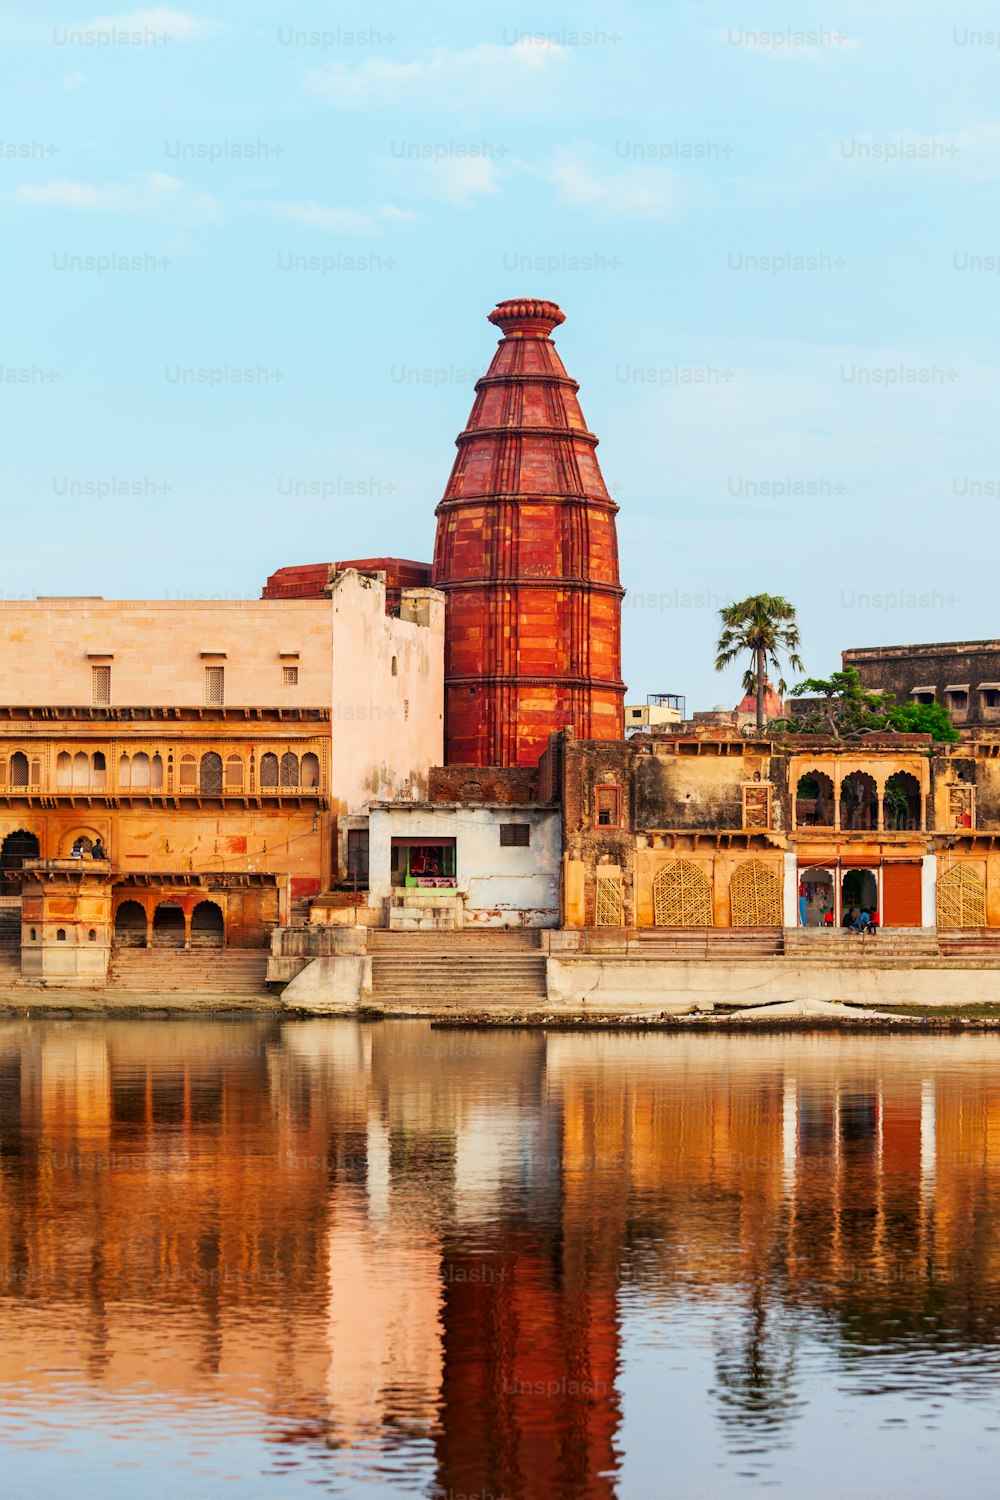 Krishna-Tempel am Keshi Ghat am Yamuna-Fluss in Vrindavan in der Nähe der Stadt Mathura im indischen Bundesstaat Uttar Pradesh